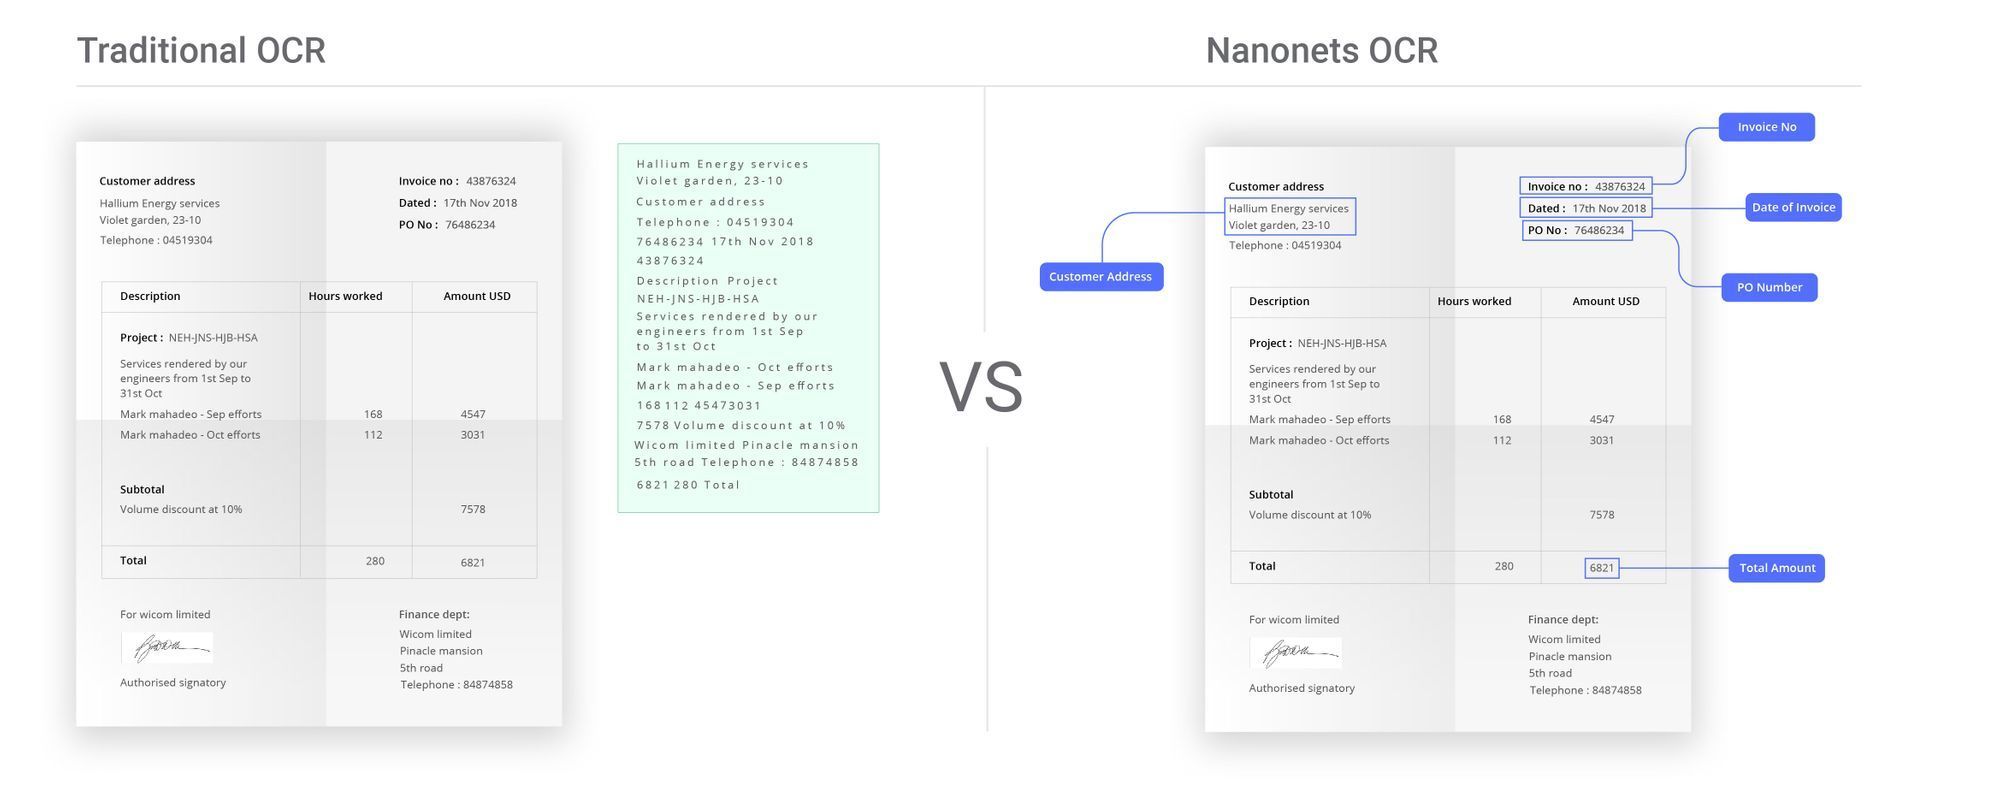 תמונה הממחישה את היתרונות של Nanonets OCR עבור אוטומציה של הזנת הזמנות בהשוואה לכלי OCR מסורתיים